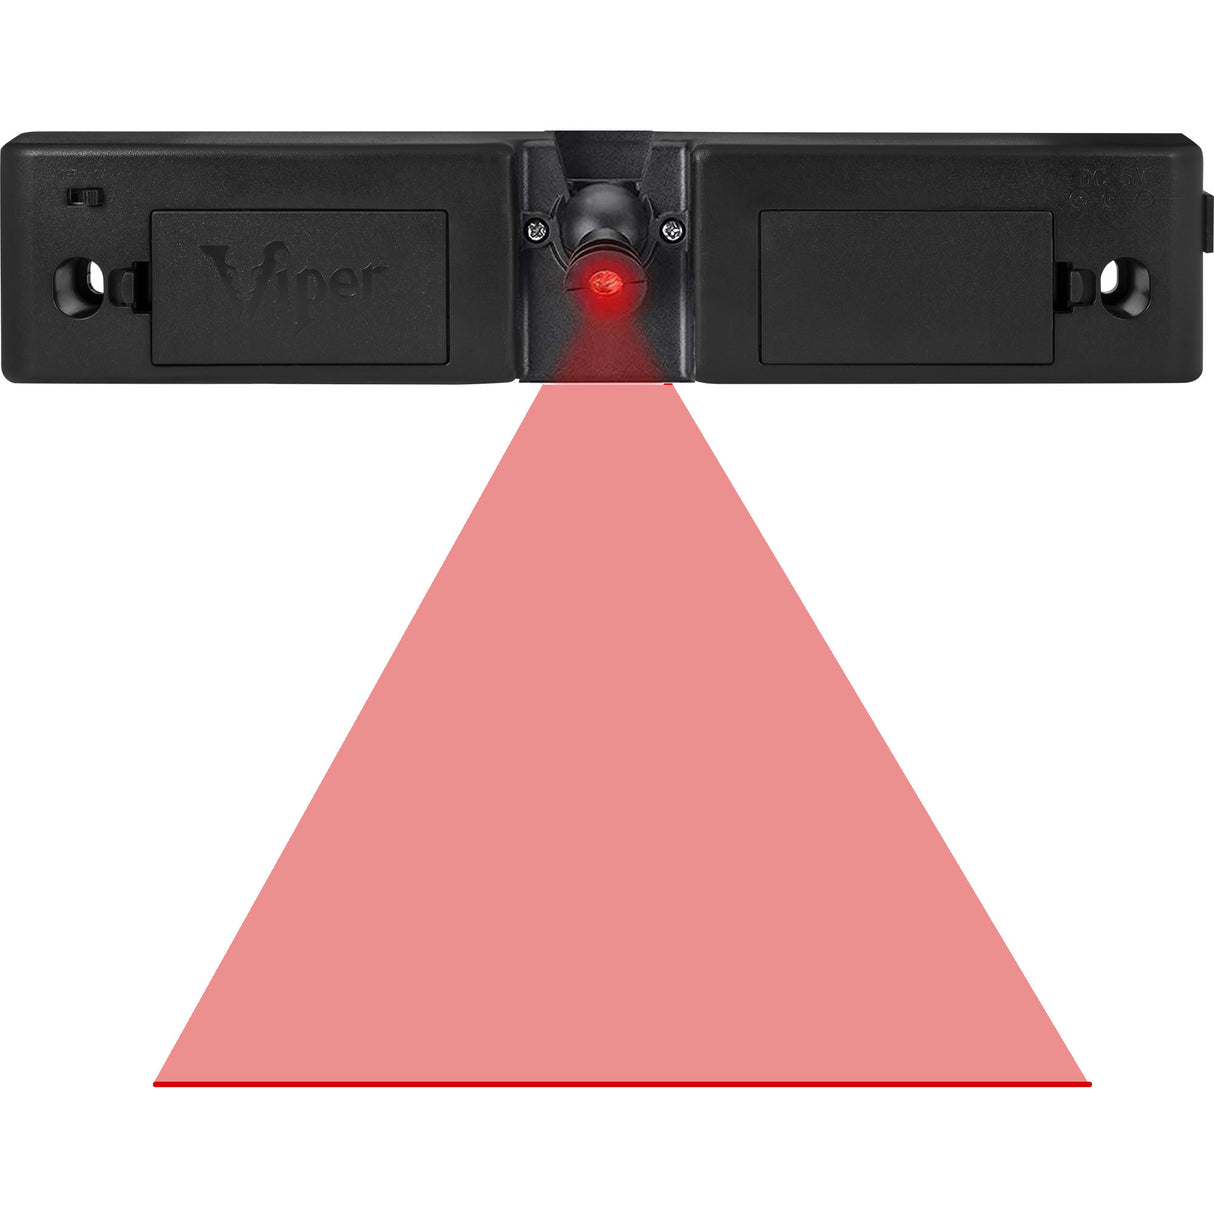 Viper Laser Dart Line - Throw Line - Adjustable - Laser Beam Oche - Black